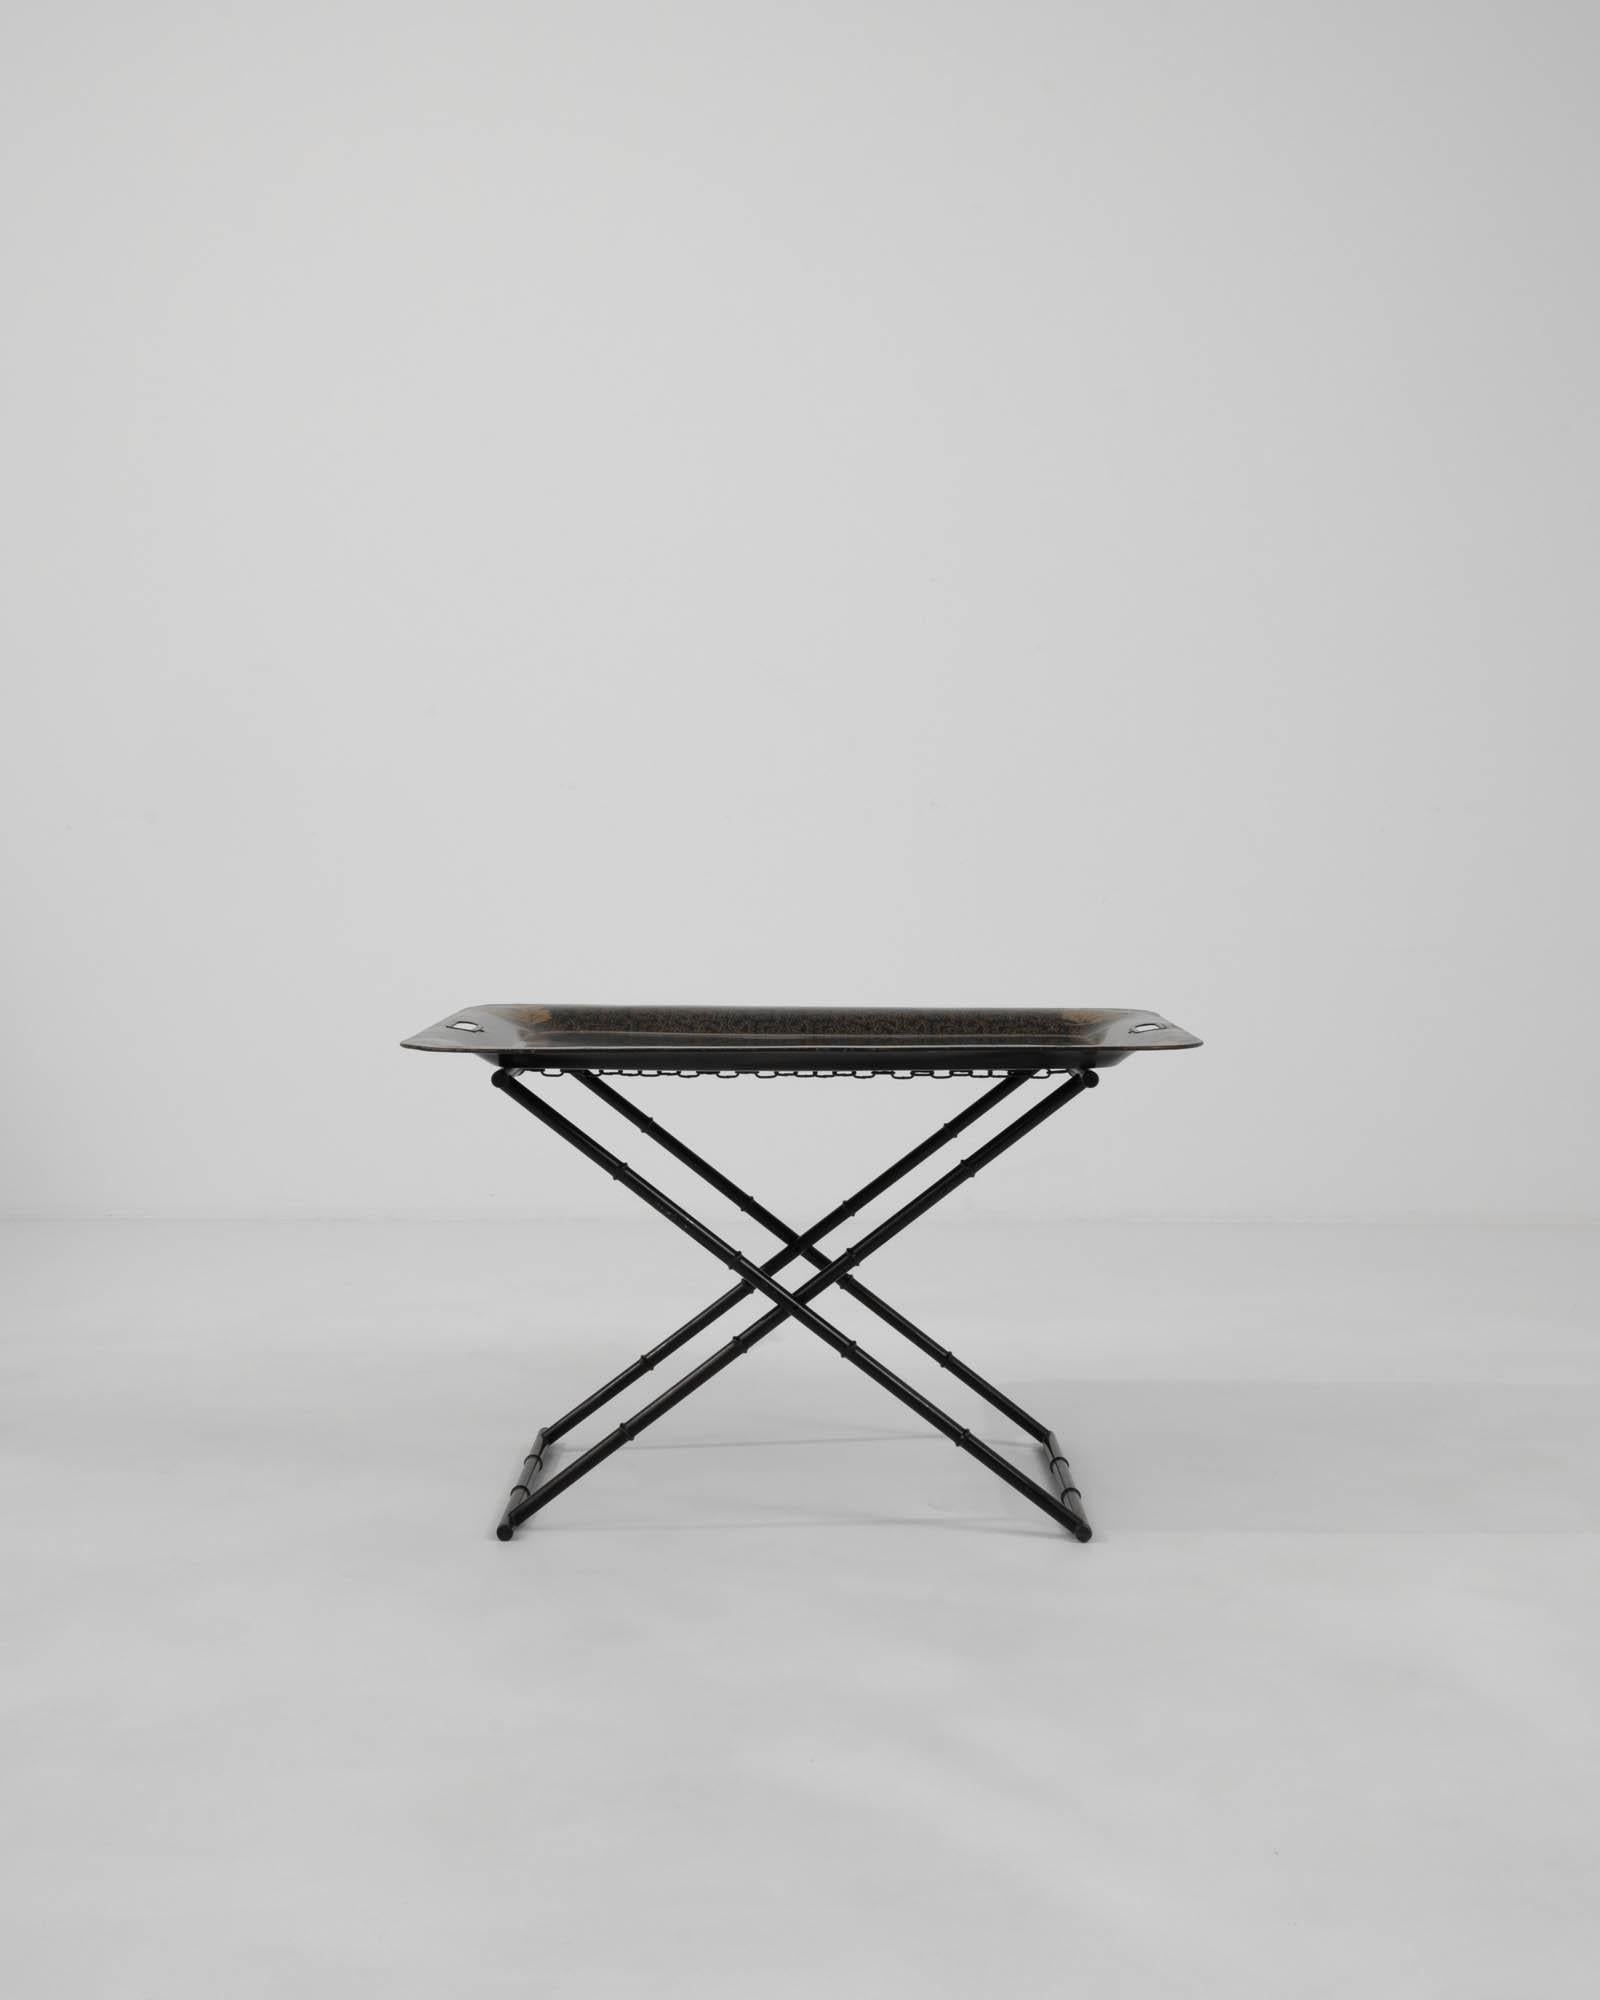 Présentant la quintessence de l'ingéniosité française et du design du XXe siècle, cette table basse pliante en métal allie l'aspect pratique à une touche artistique. Le cadre en métal noir est conçu pour être à la fois solide et élégant. Il est doté